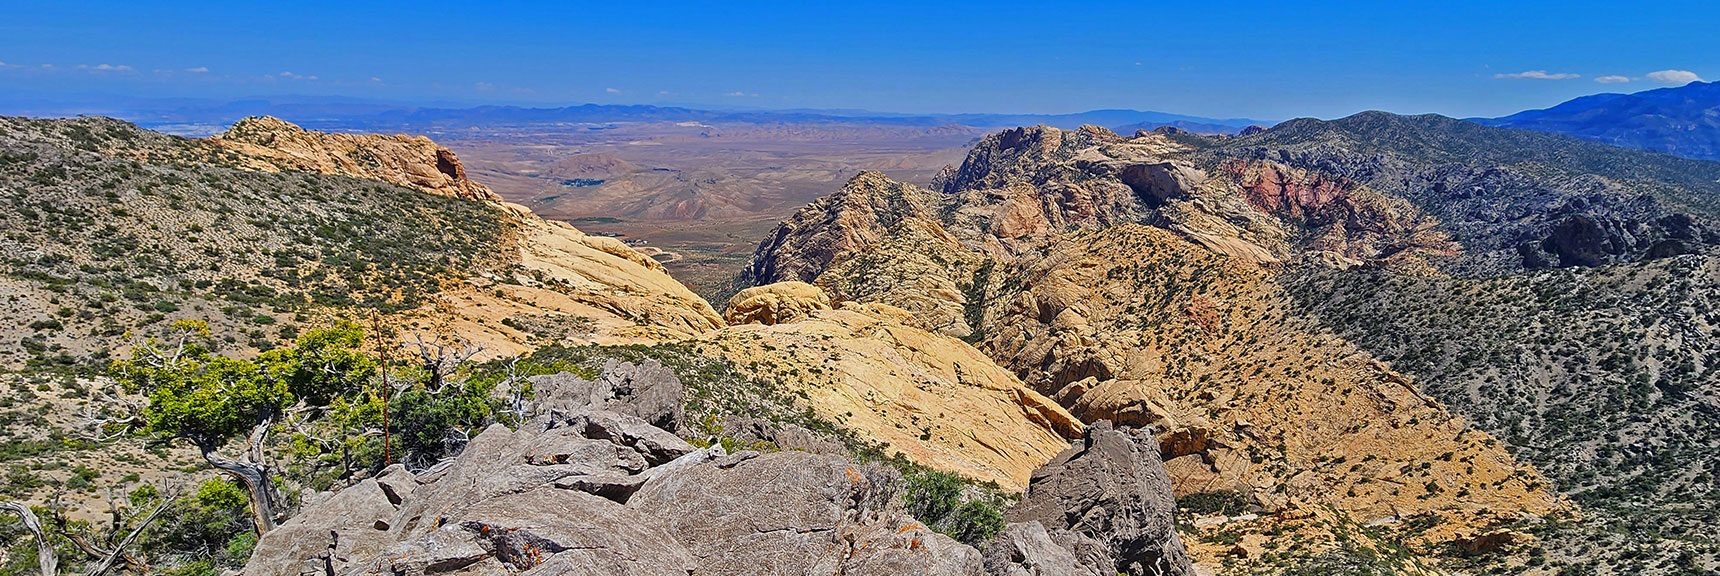 Canyon Between Indecision Peak and Hidden Peak | Mt Wilson to Hidden Peak | Upper Crest Ridgeline | Rainbow Mountain Wilderness, Nevada